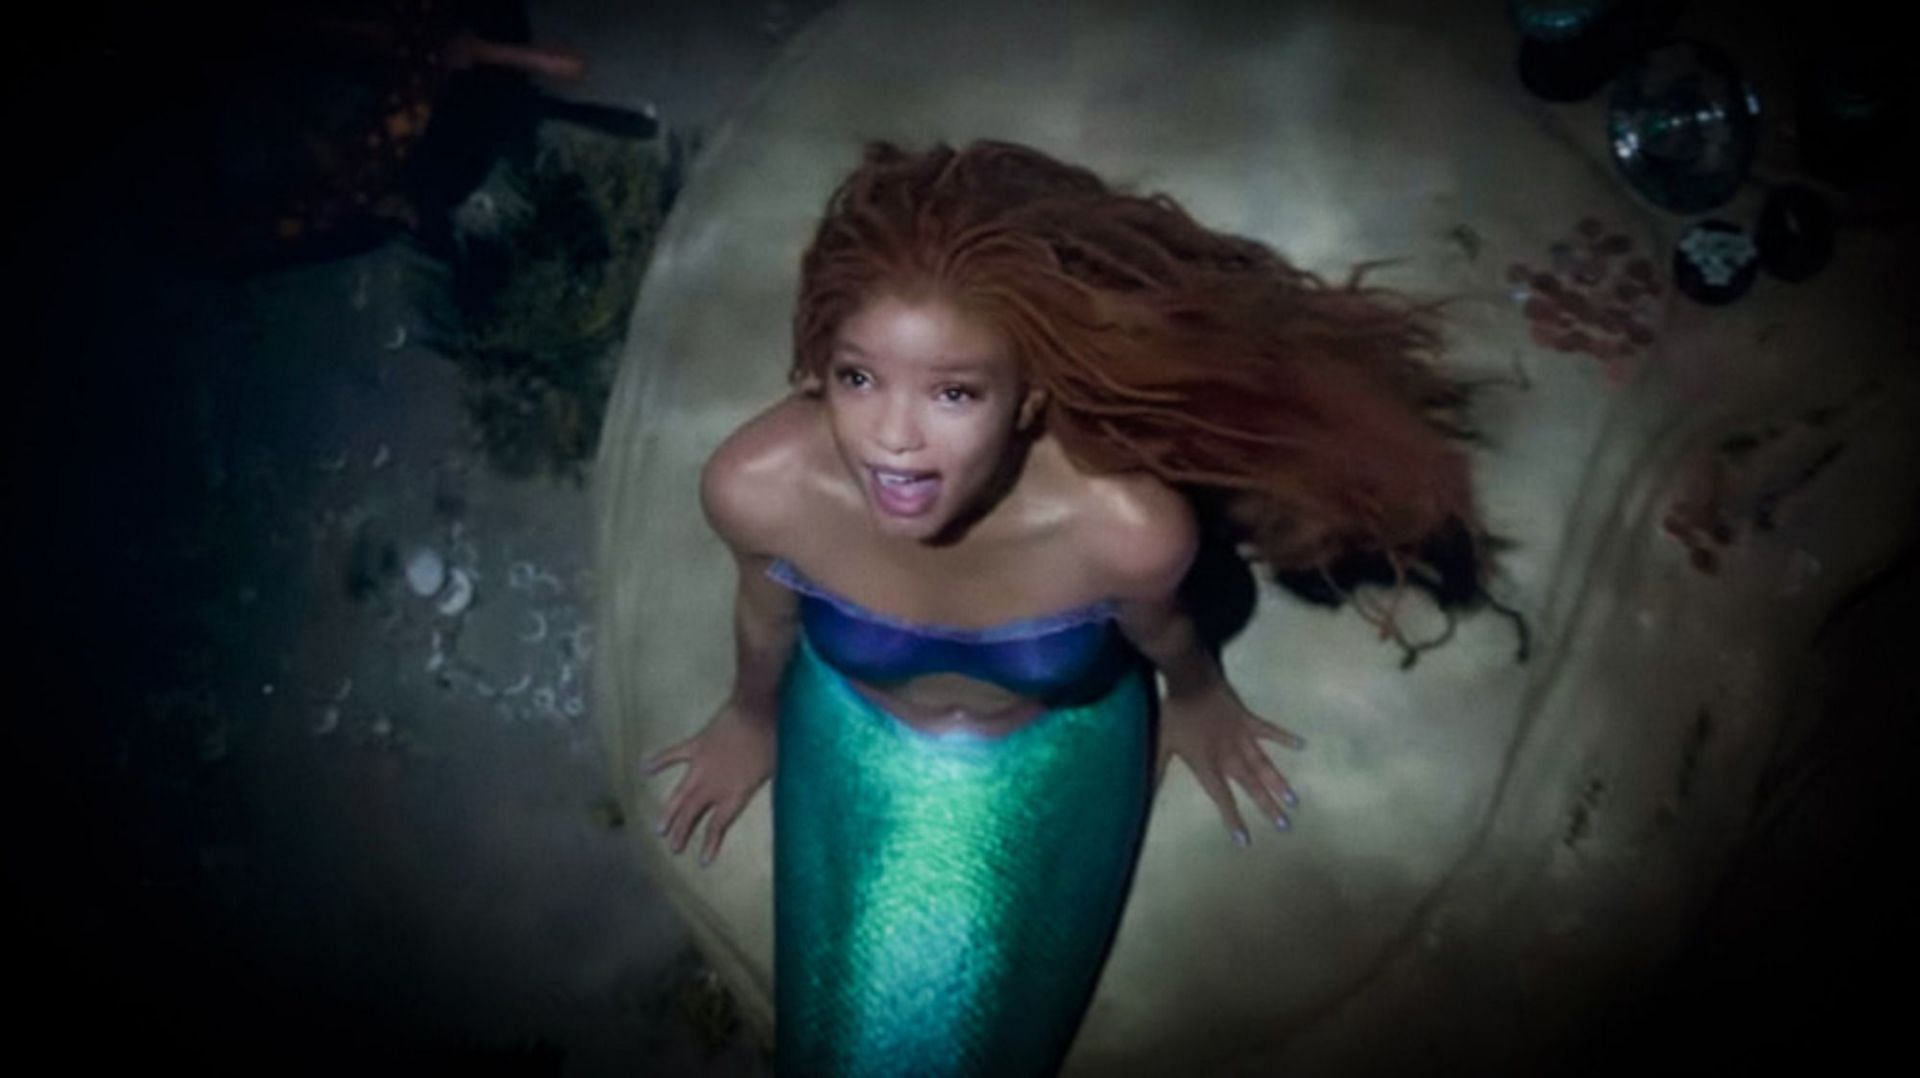 Netizens go gaga over The Little Mermaid trailer starring Halle Bailey (Disney)